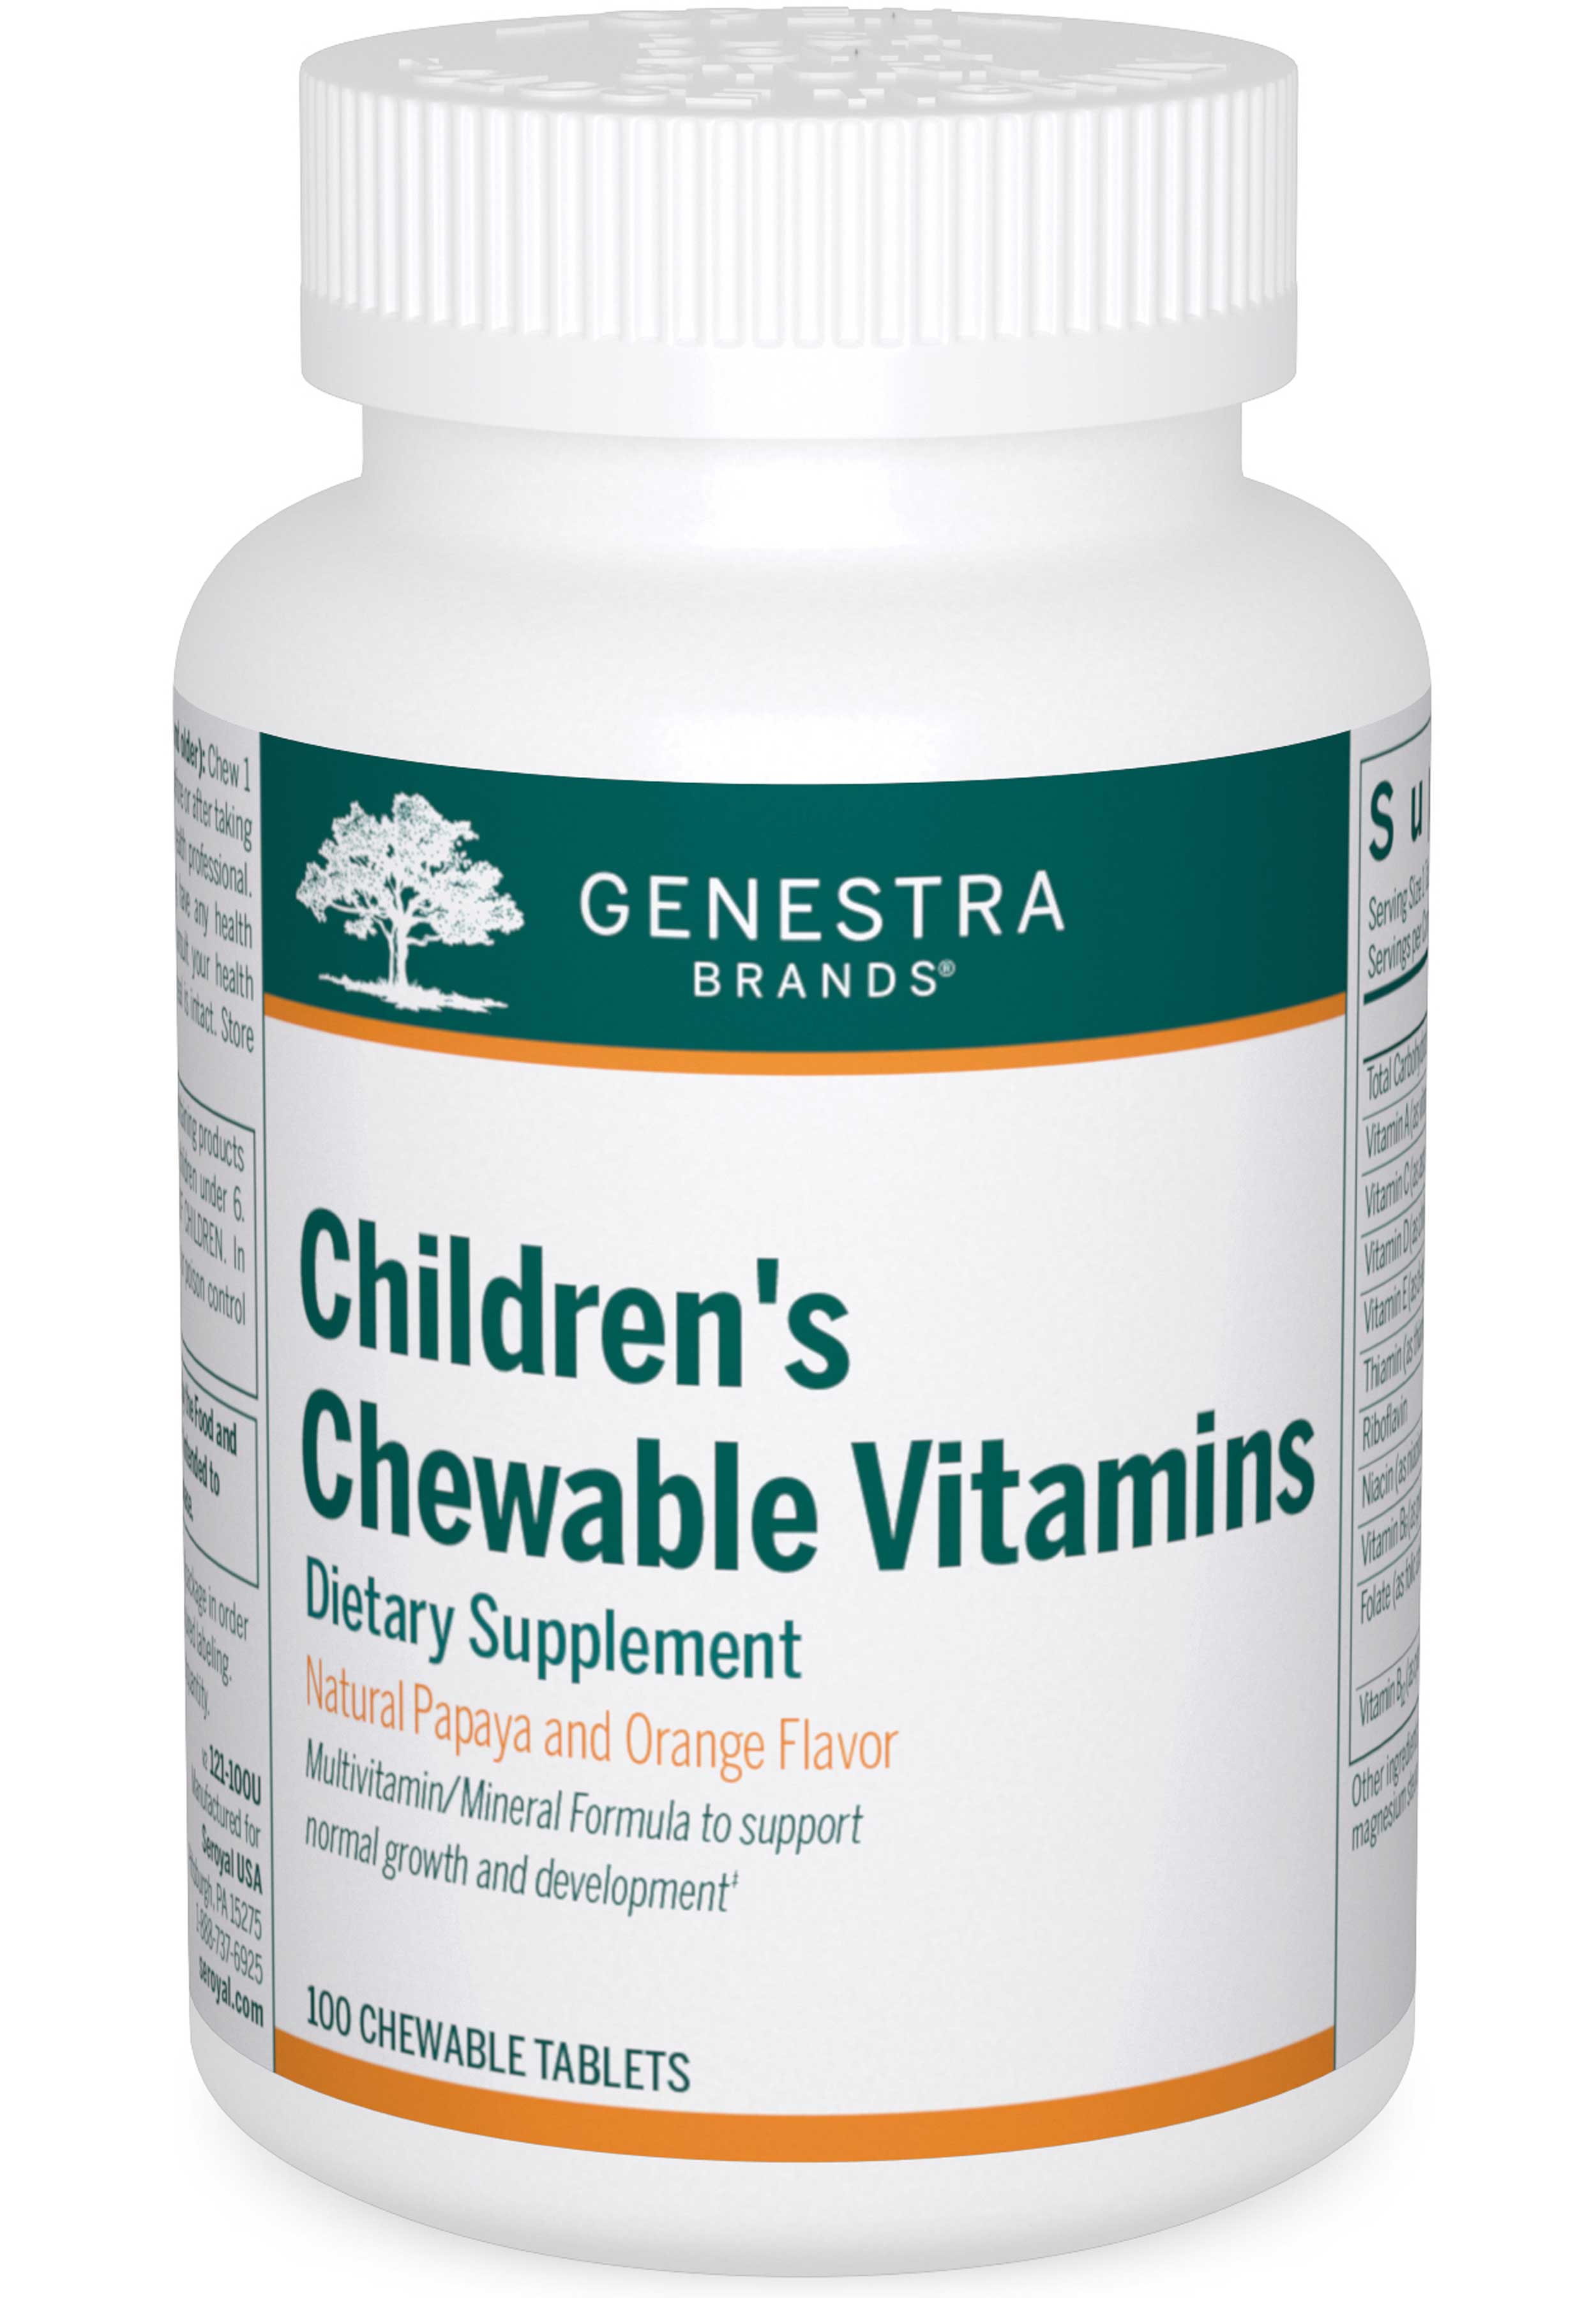 Genestra Brands Children's Chewable Vitamins